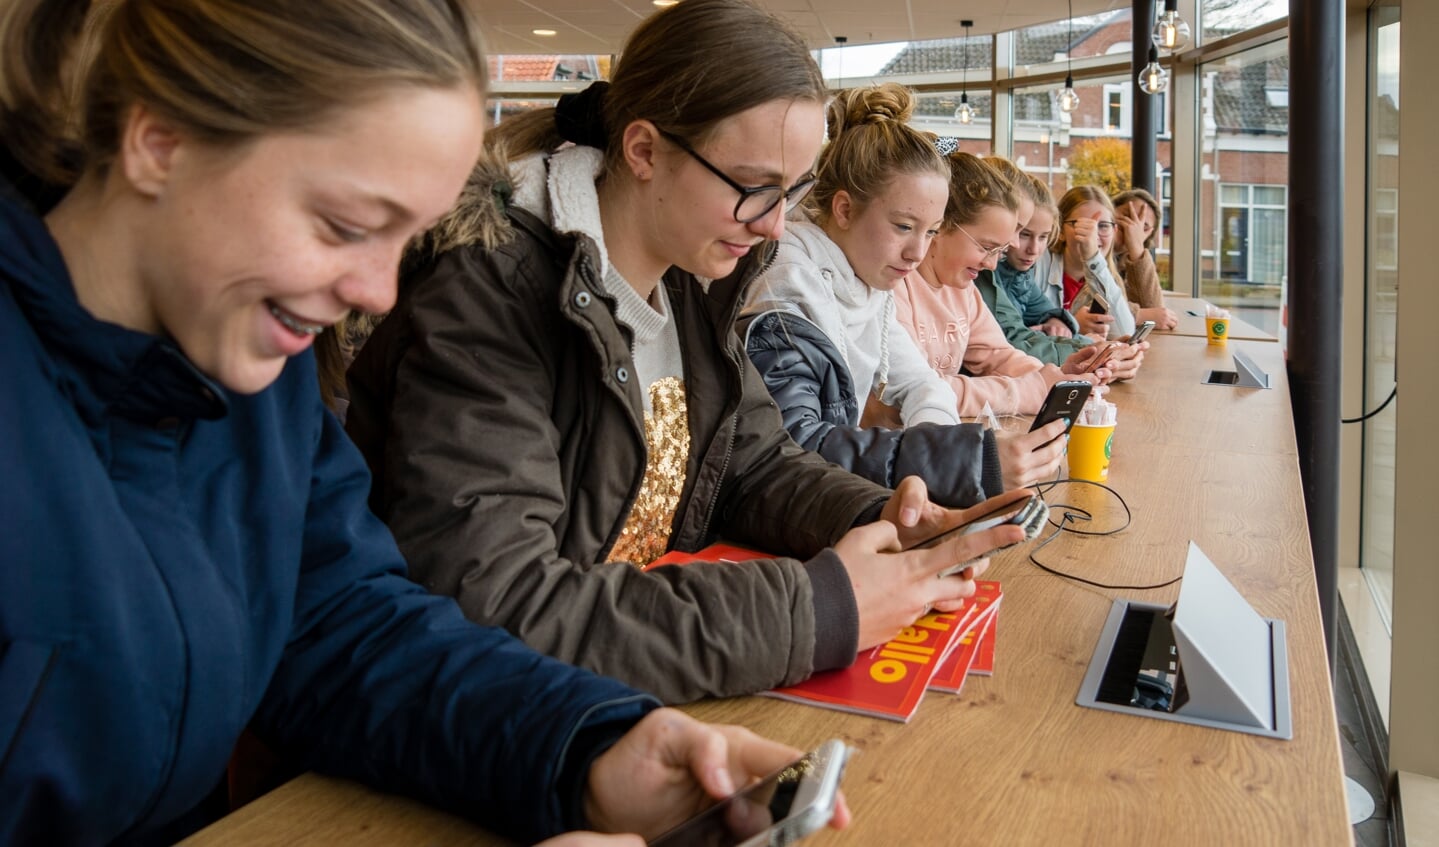 De studentenbar, waar de scholieren meteen gebruik maken van de mogelijkheid om de telefoon op te laden. Foto: Marcel te Brake 